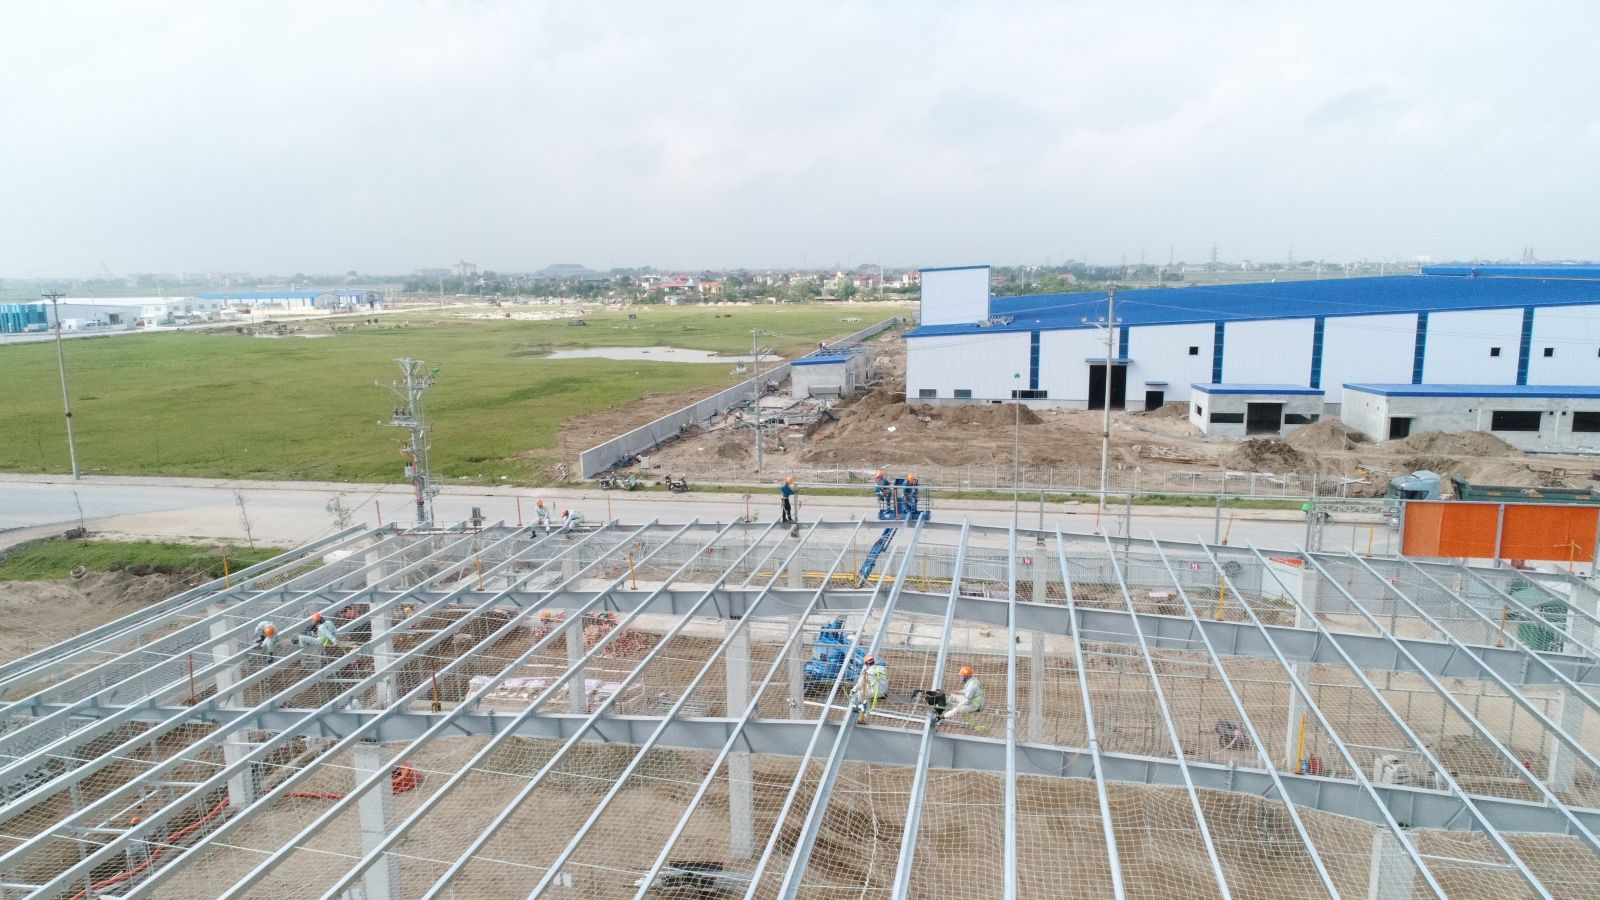 Thi công xây dựng khung nhà thép nhà máy kuwana Đồng Văn giai đoạn I